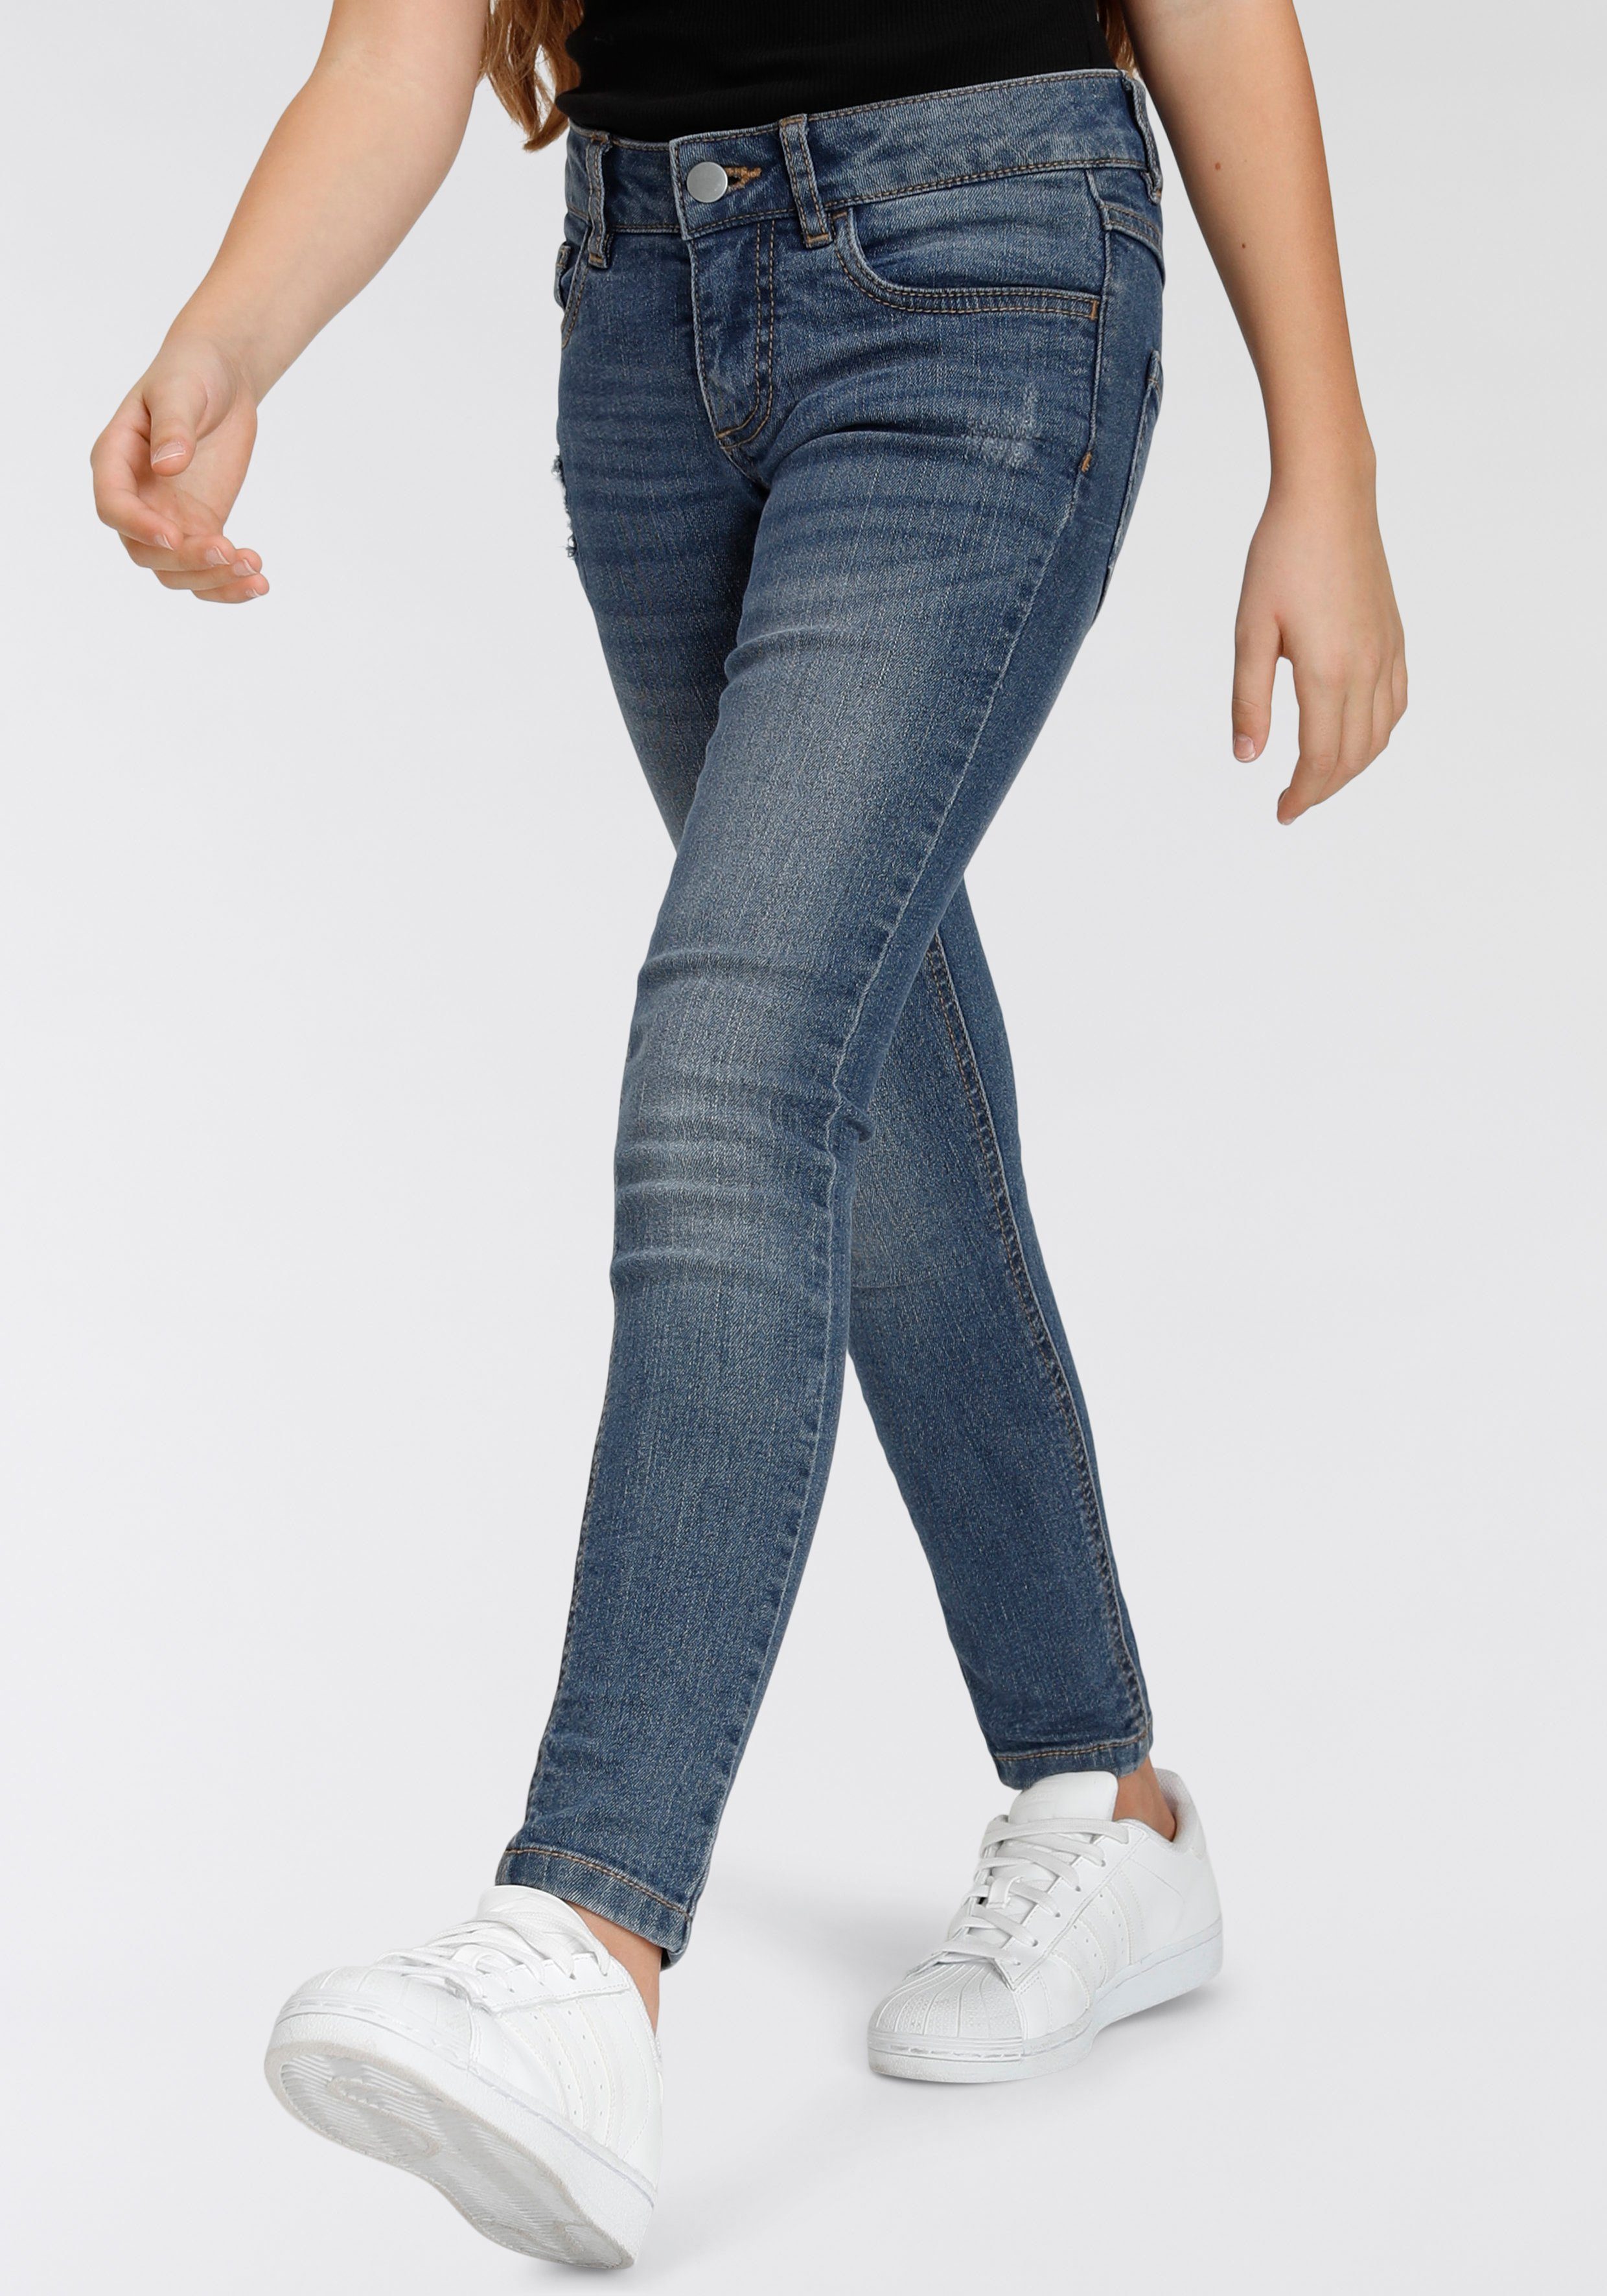 Stretch-Jeans Skinny Super Abriebeffekten in dezenten mit Bench.